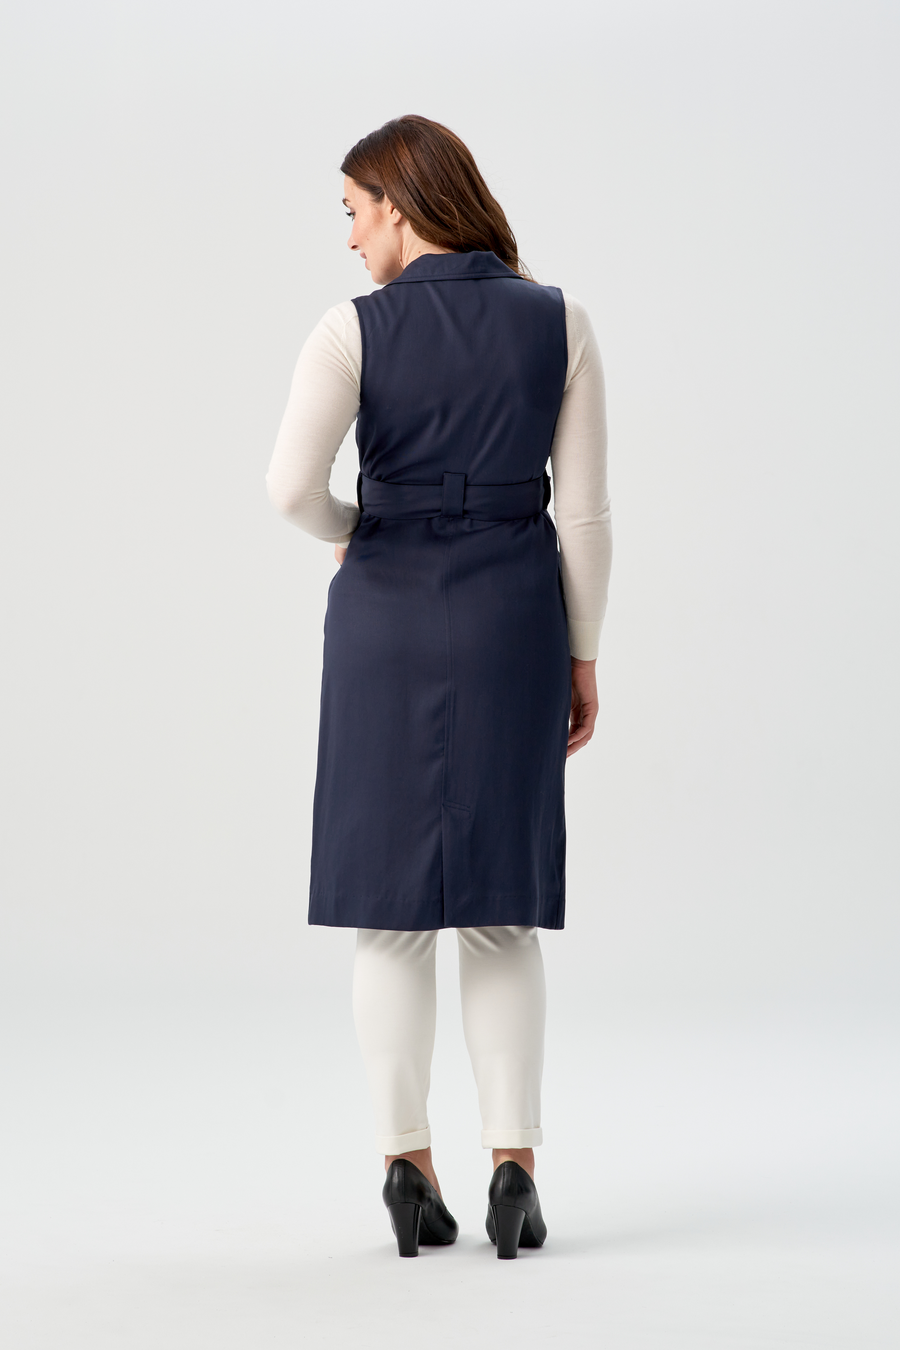 women's navy blue vest